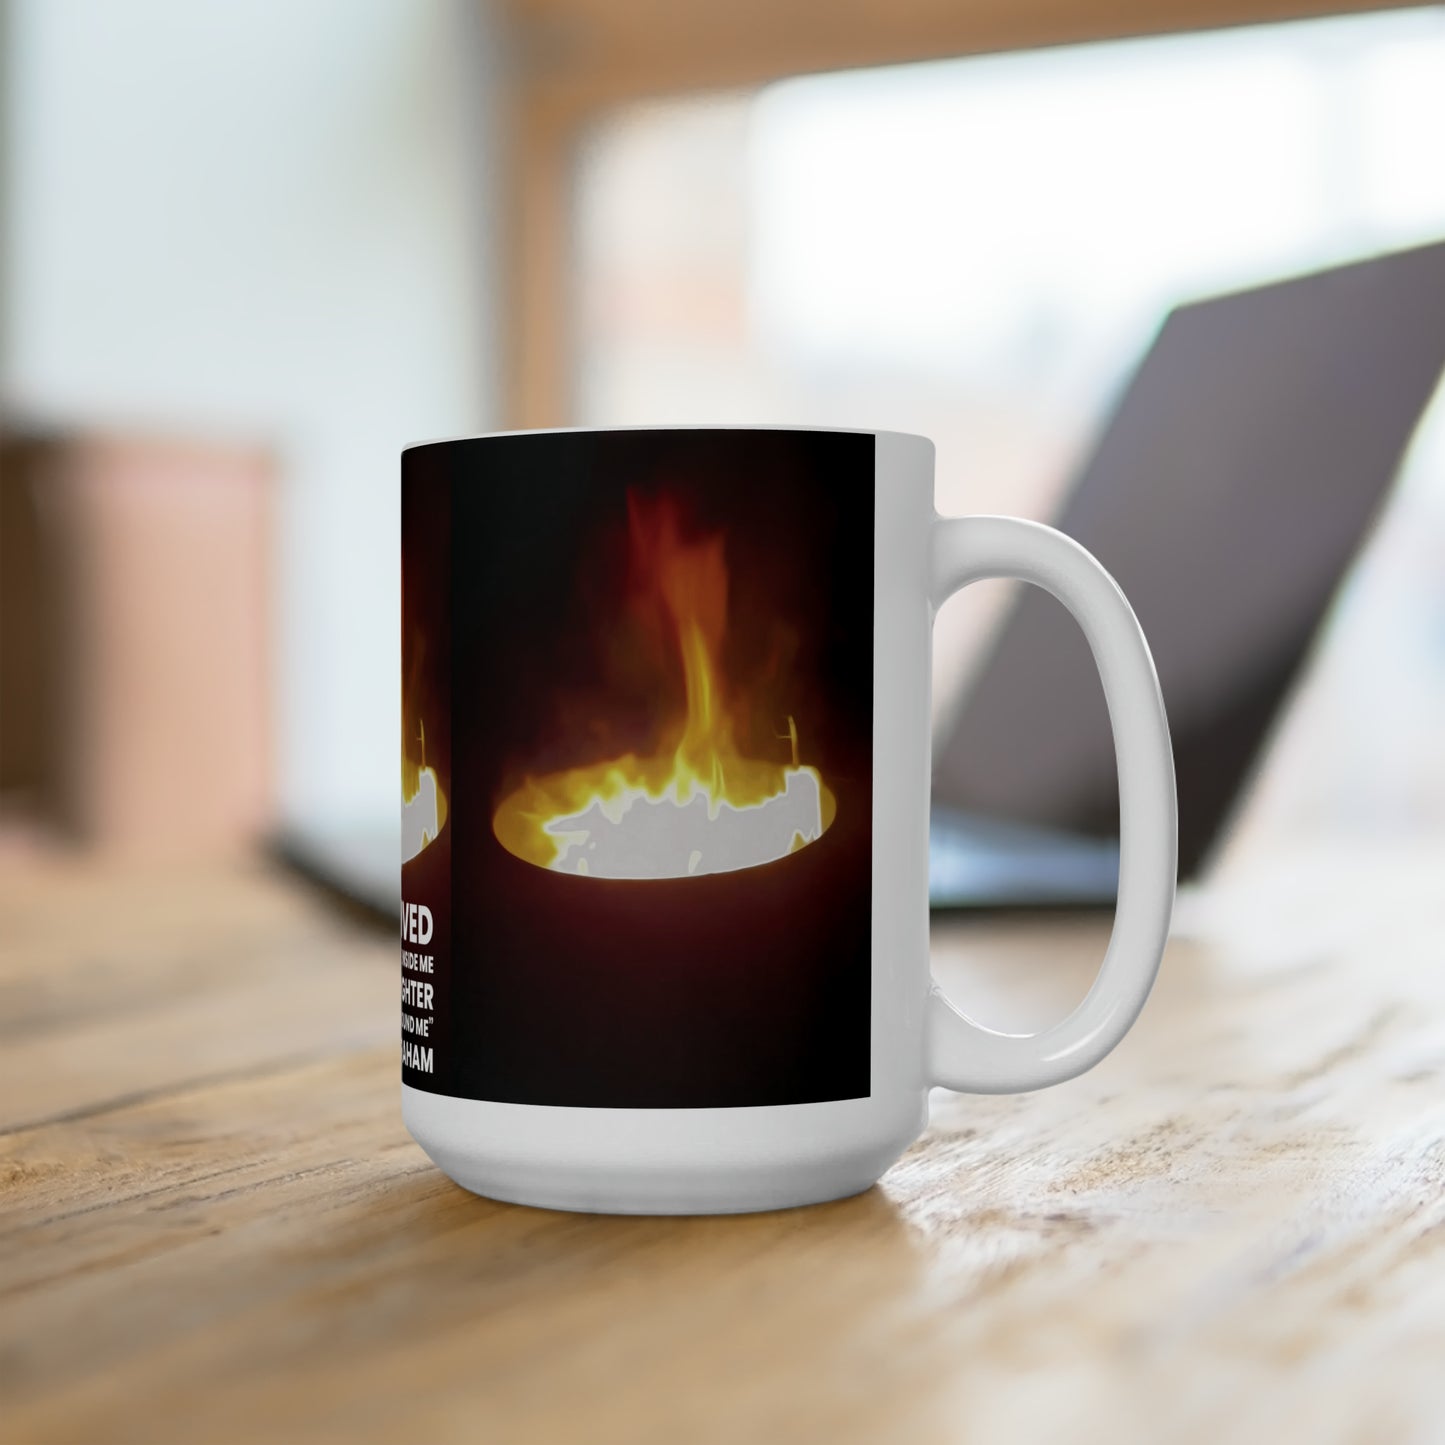 A Survivor Inspirational Motivation Fire Within Ceramic Mug 15oz